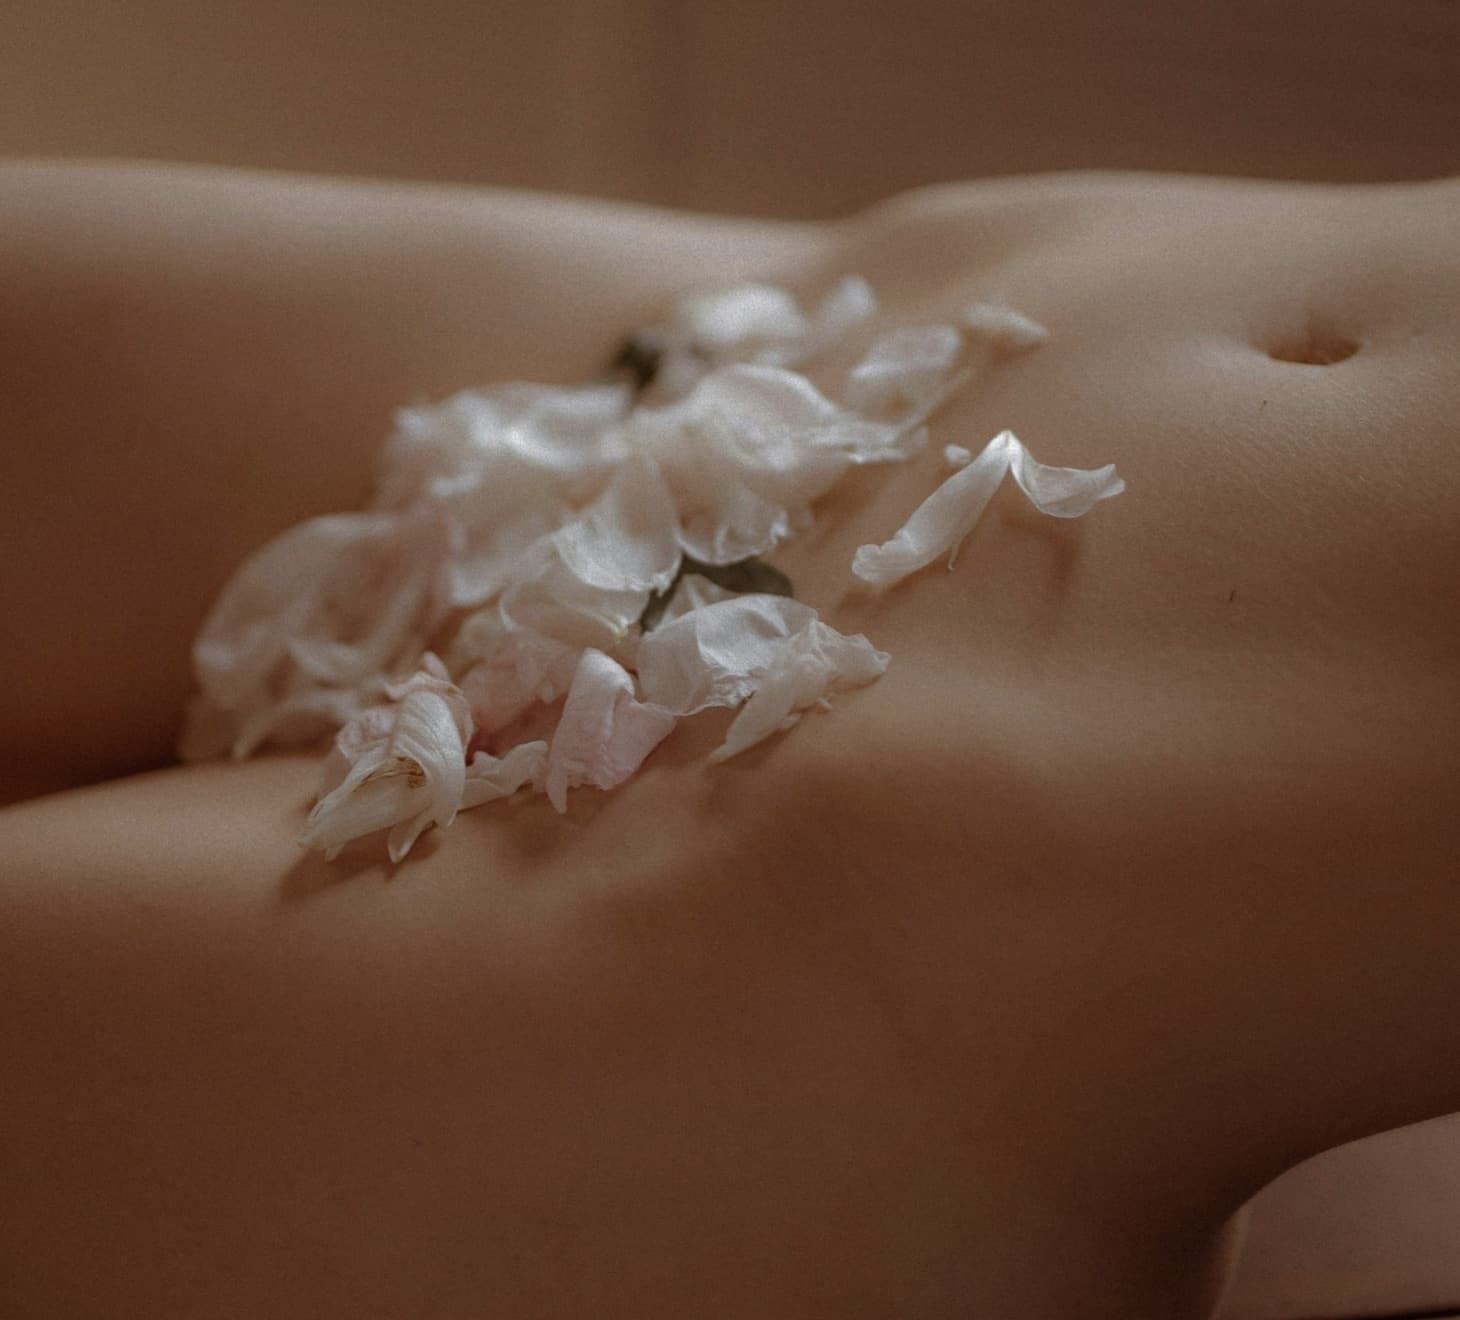 Lifting du pubis, femme nue cachee sous petales de fleurs | Dr Romain Aimard